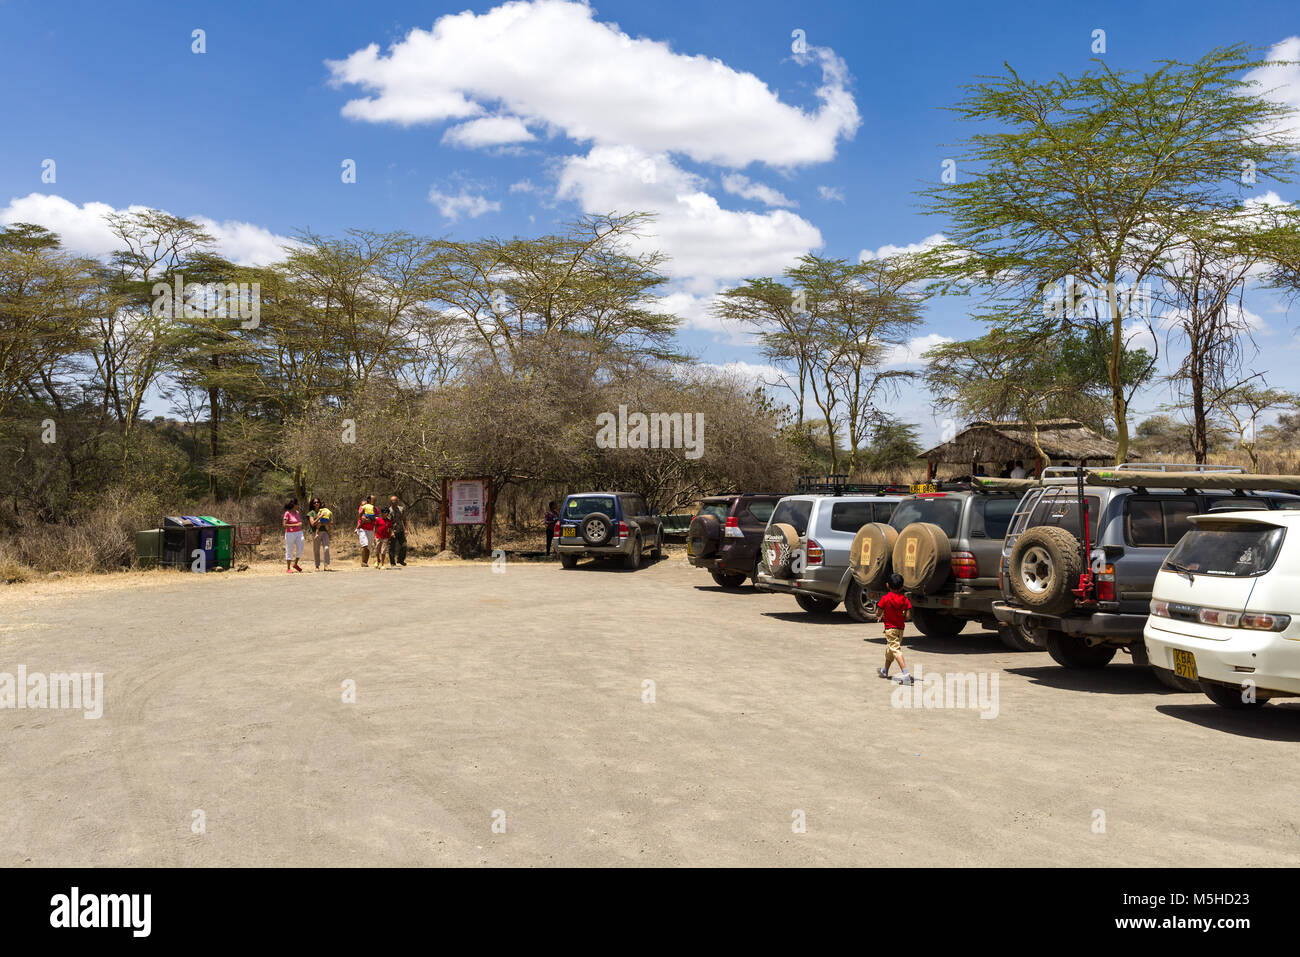 Veicoli parcheggiati a Ippona piscine parcheggio auto nel Parco Nazionale di Nairobi con persone in piedi dalle vetture, Kenya Foto Stock